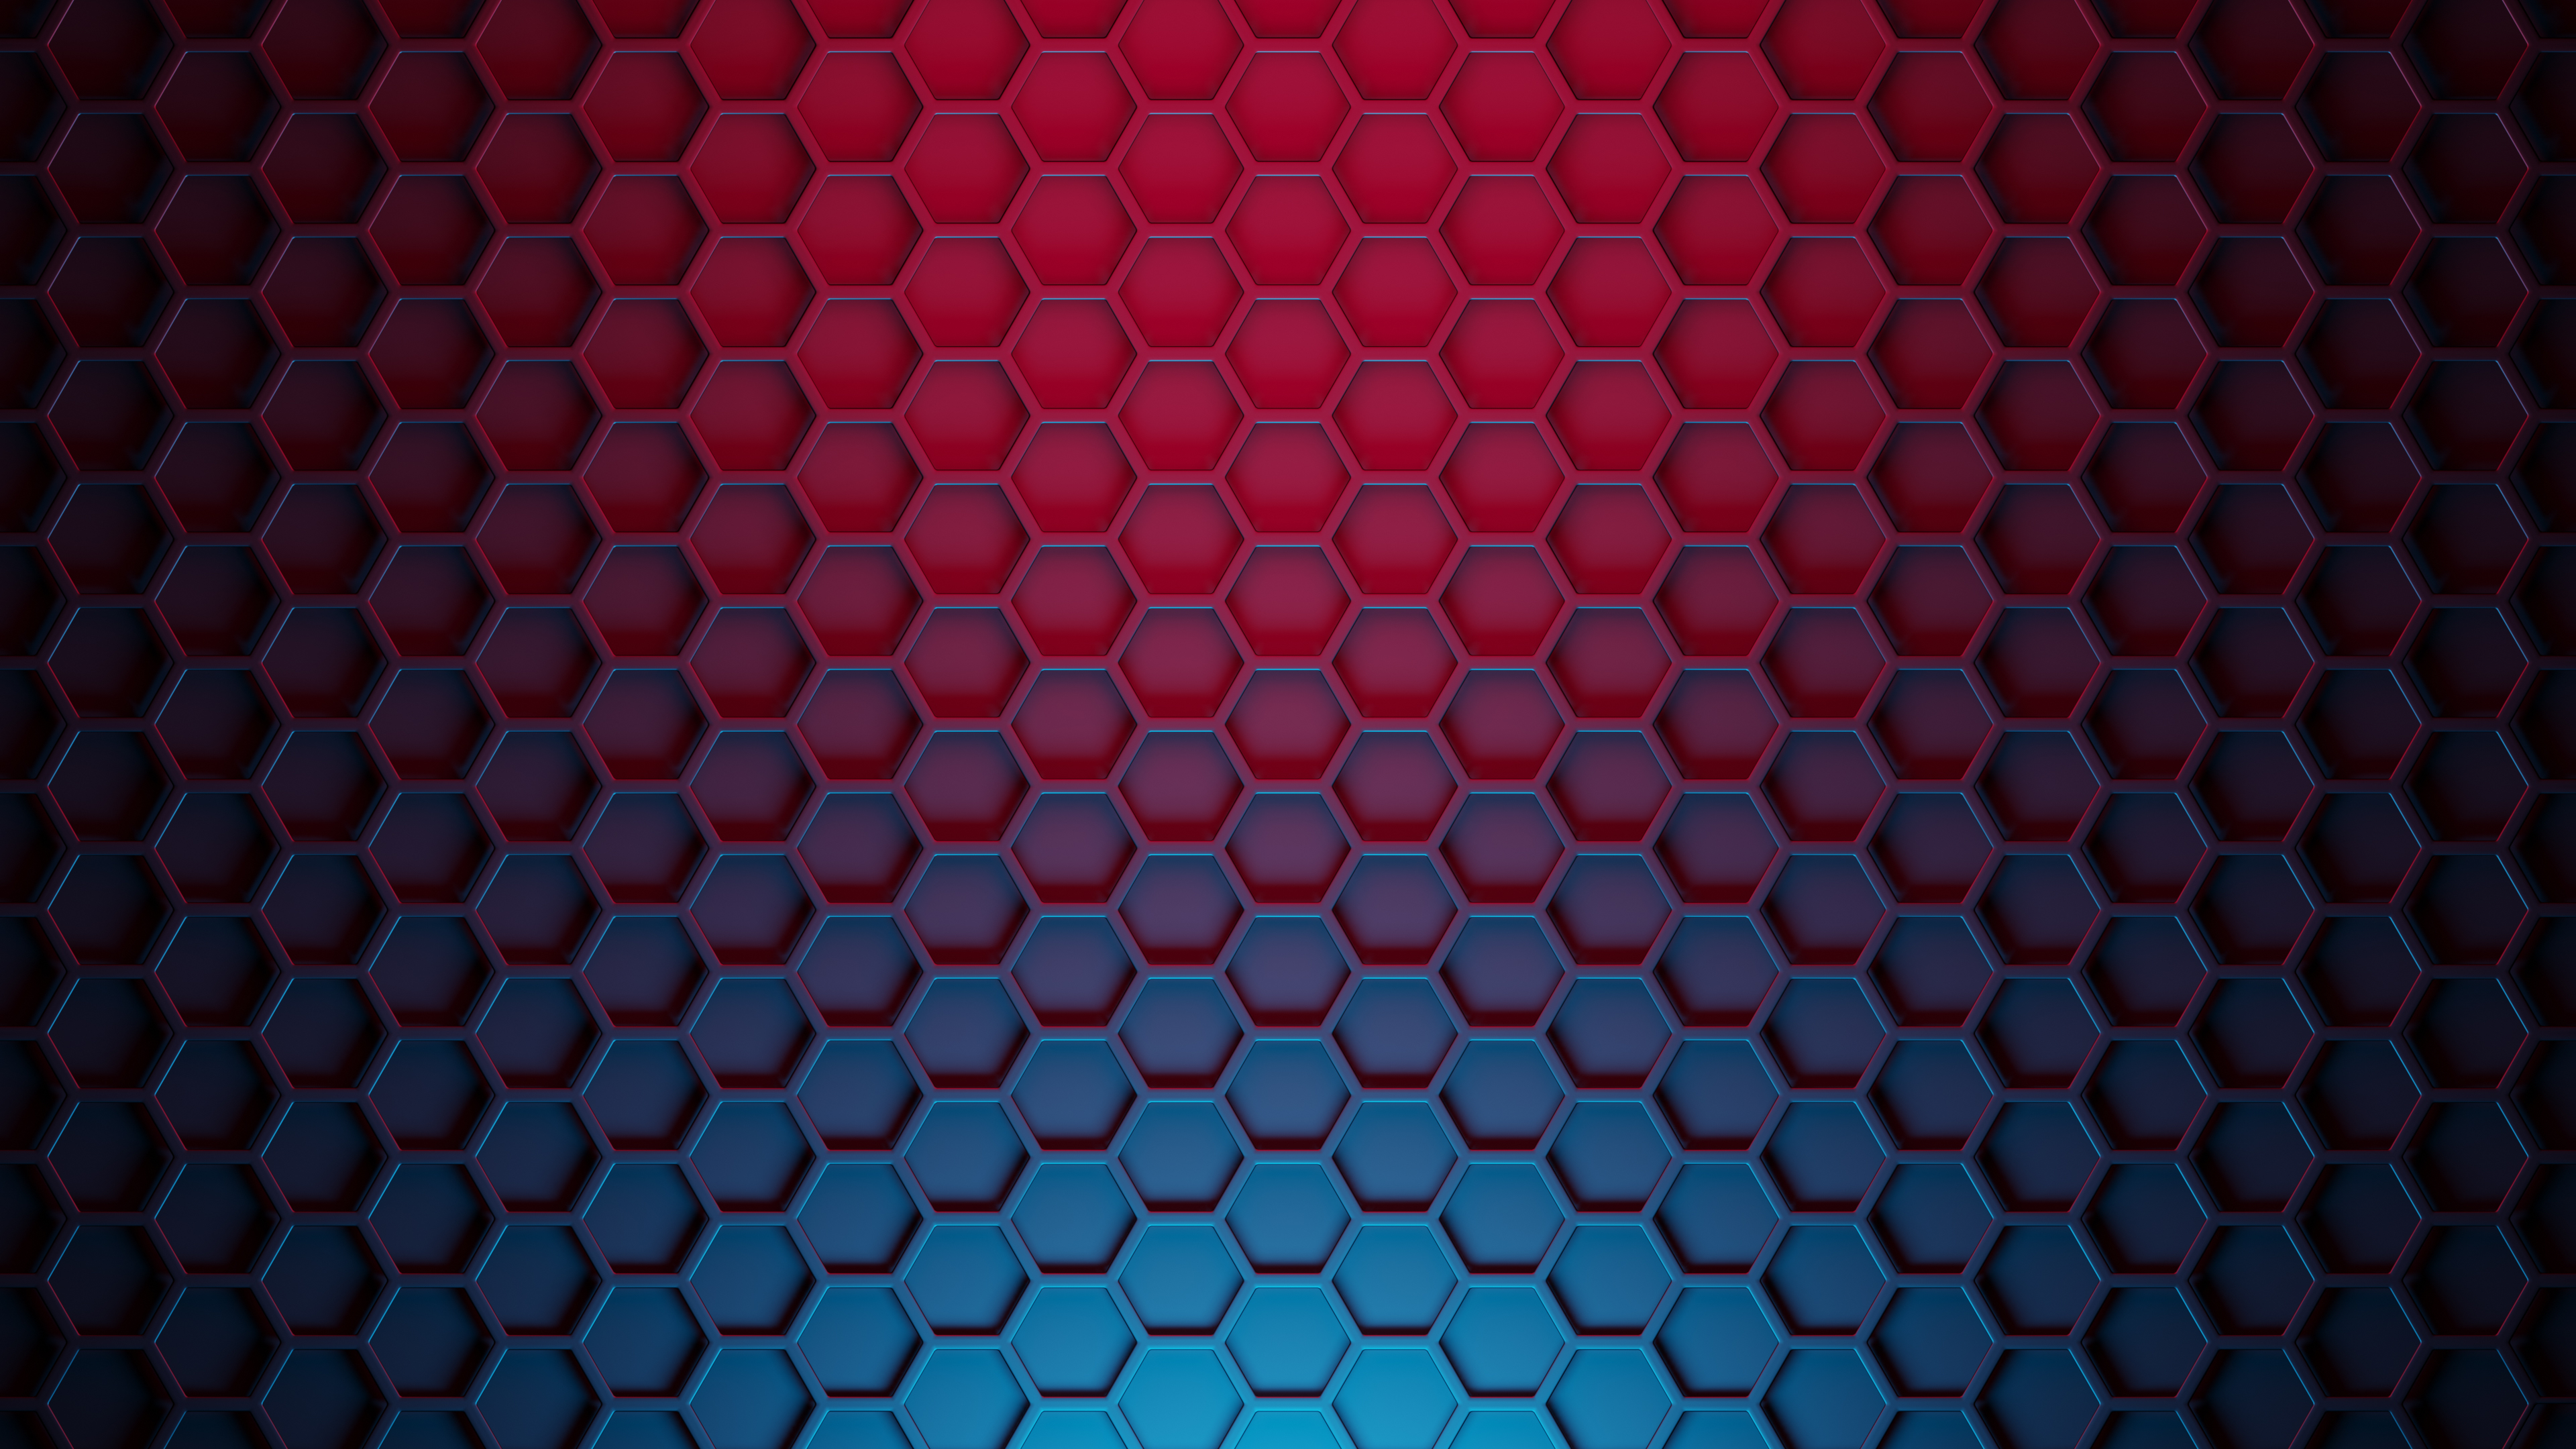 2560x1024 Resolution Hexagon 3D Pattern 2560x1024 Resolution Wallpaper ...